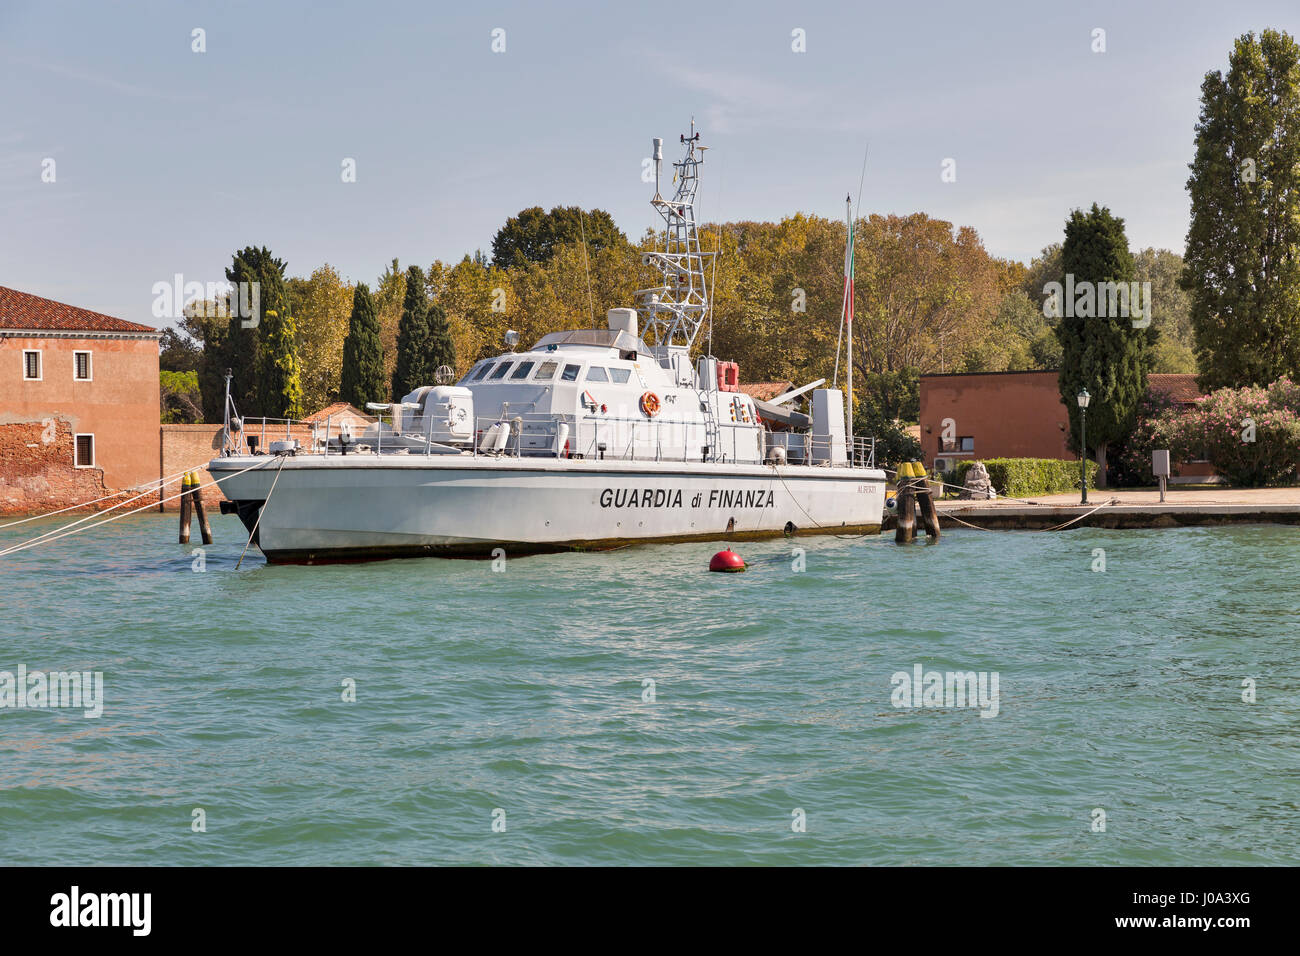 Venezia, Italia - 23 settembre 2016: la polizia finanziaria barca ormeggiata in parte anteriore del comando navale sulla stazione Guidecca isola nella laguna di Venezia. Venezia è situ Foto Stock